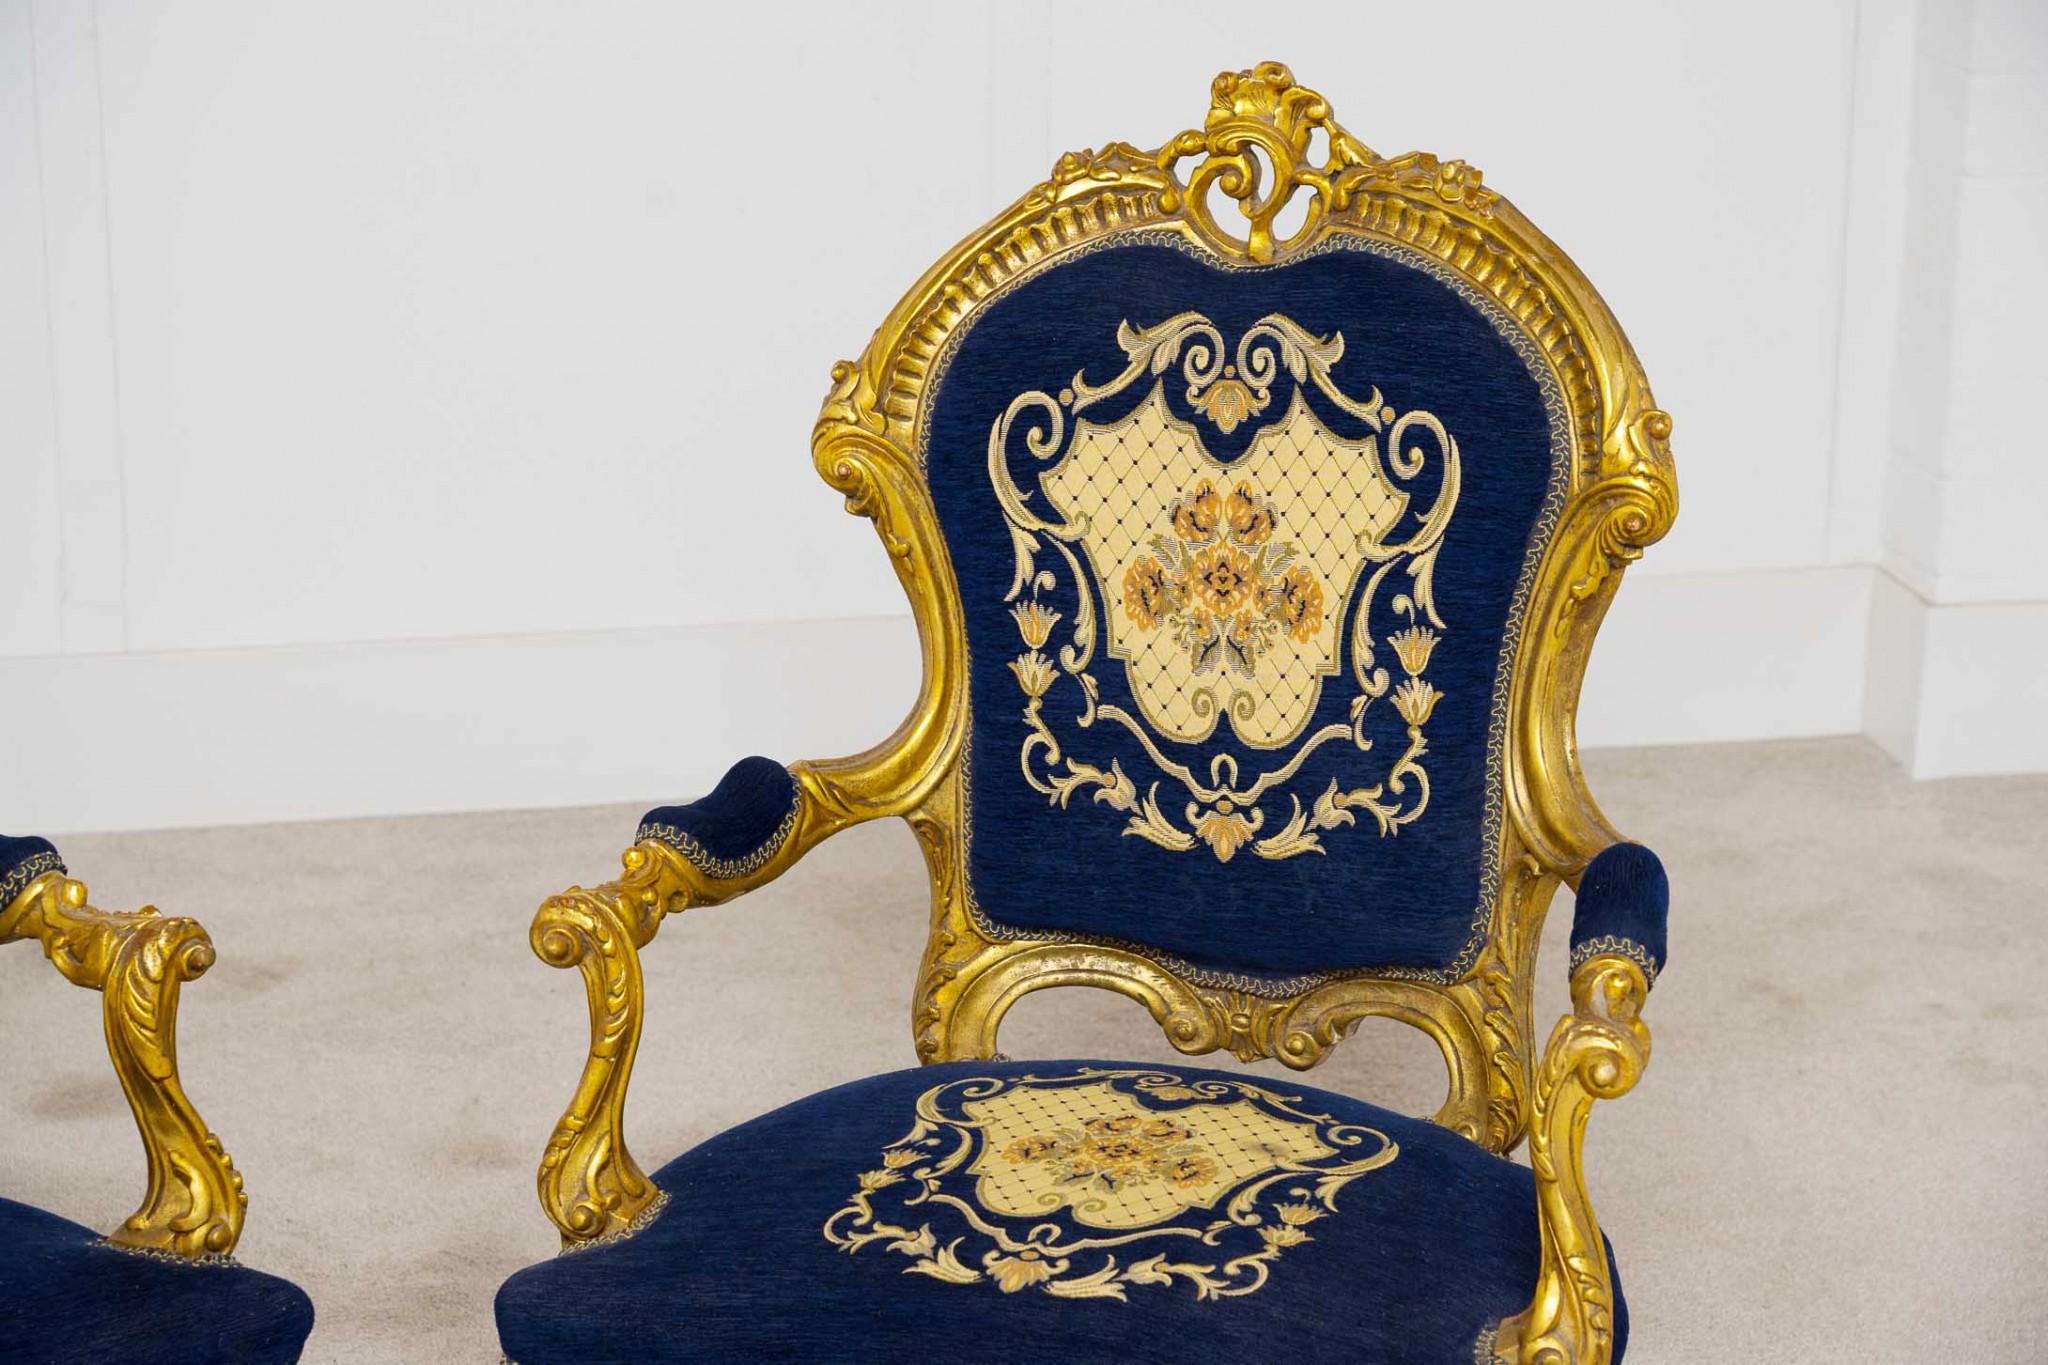 Elegantes Paar französische Sessel im Vintage-Stil
Handgeschnitzte, vergoldete Rahmen für ein goldenes Aussehen
Gepolsterte Rückenlehnen, Sitze und Armlehnen, also sehr bequem
Neu gepolstert mit Blumendruck, daher sauber und